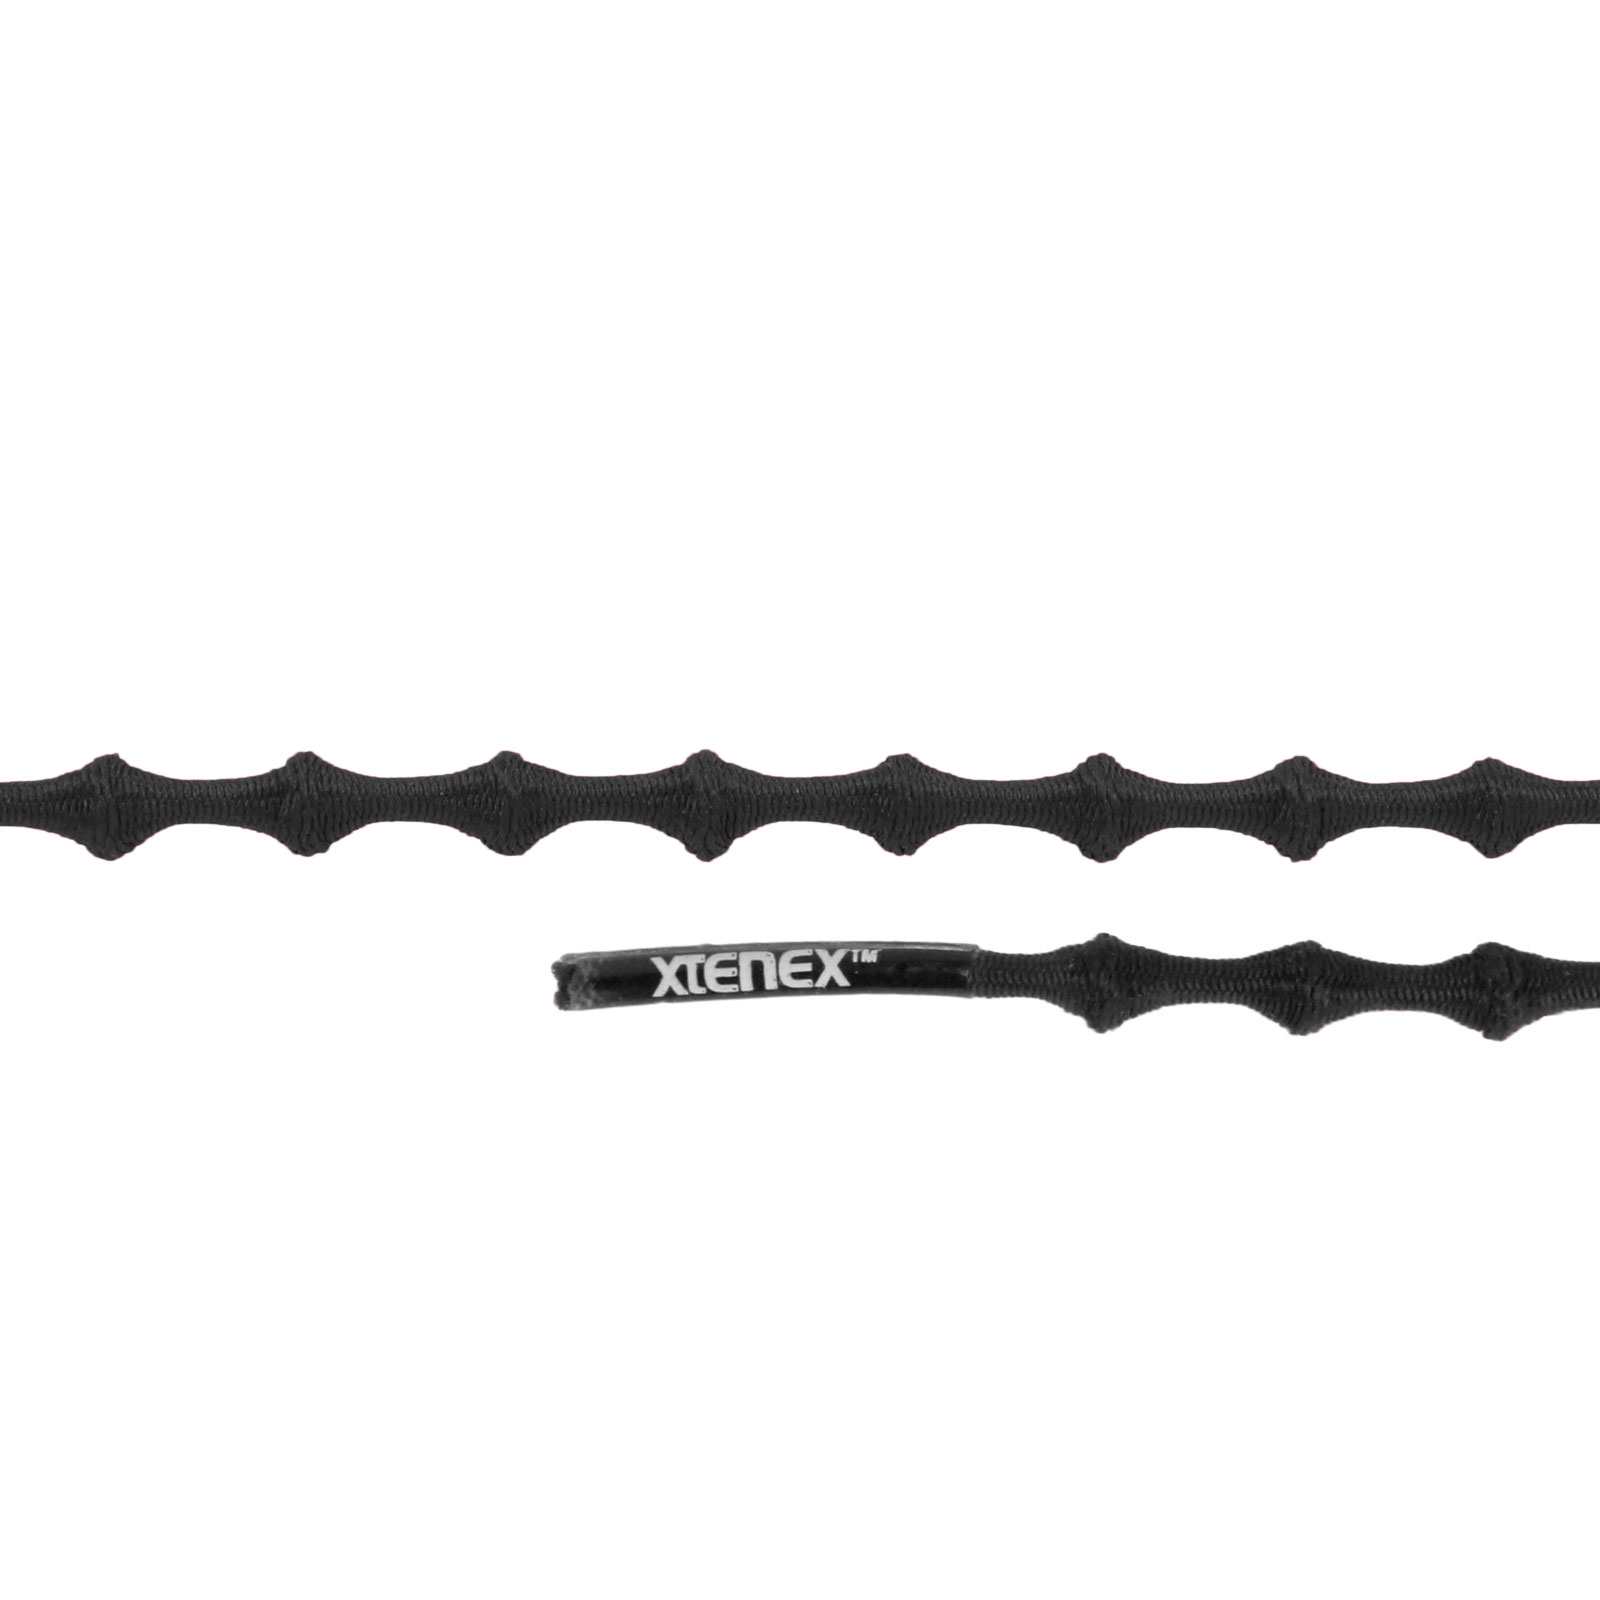 Productfoto van Xtenex Kids Veters - 50cm - zwart